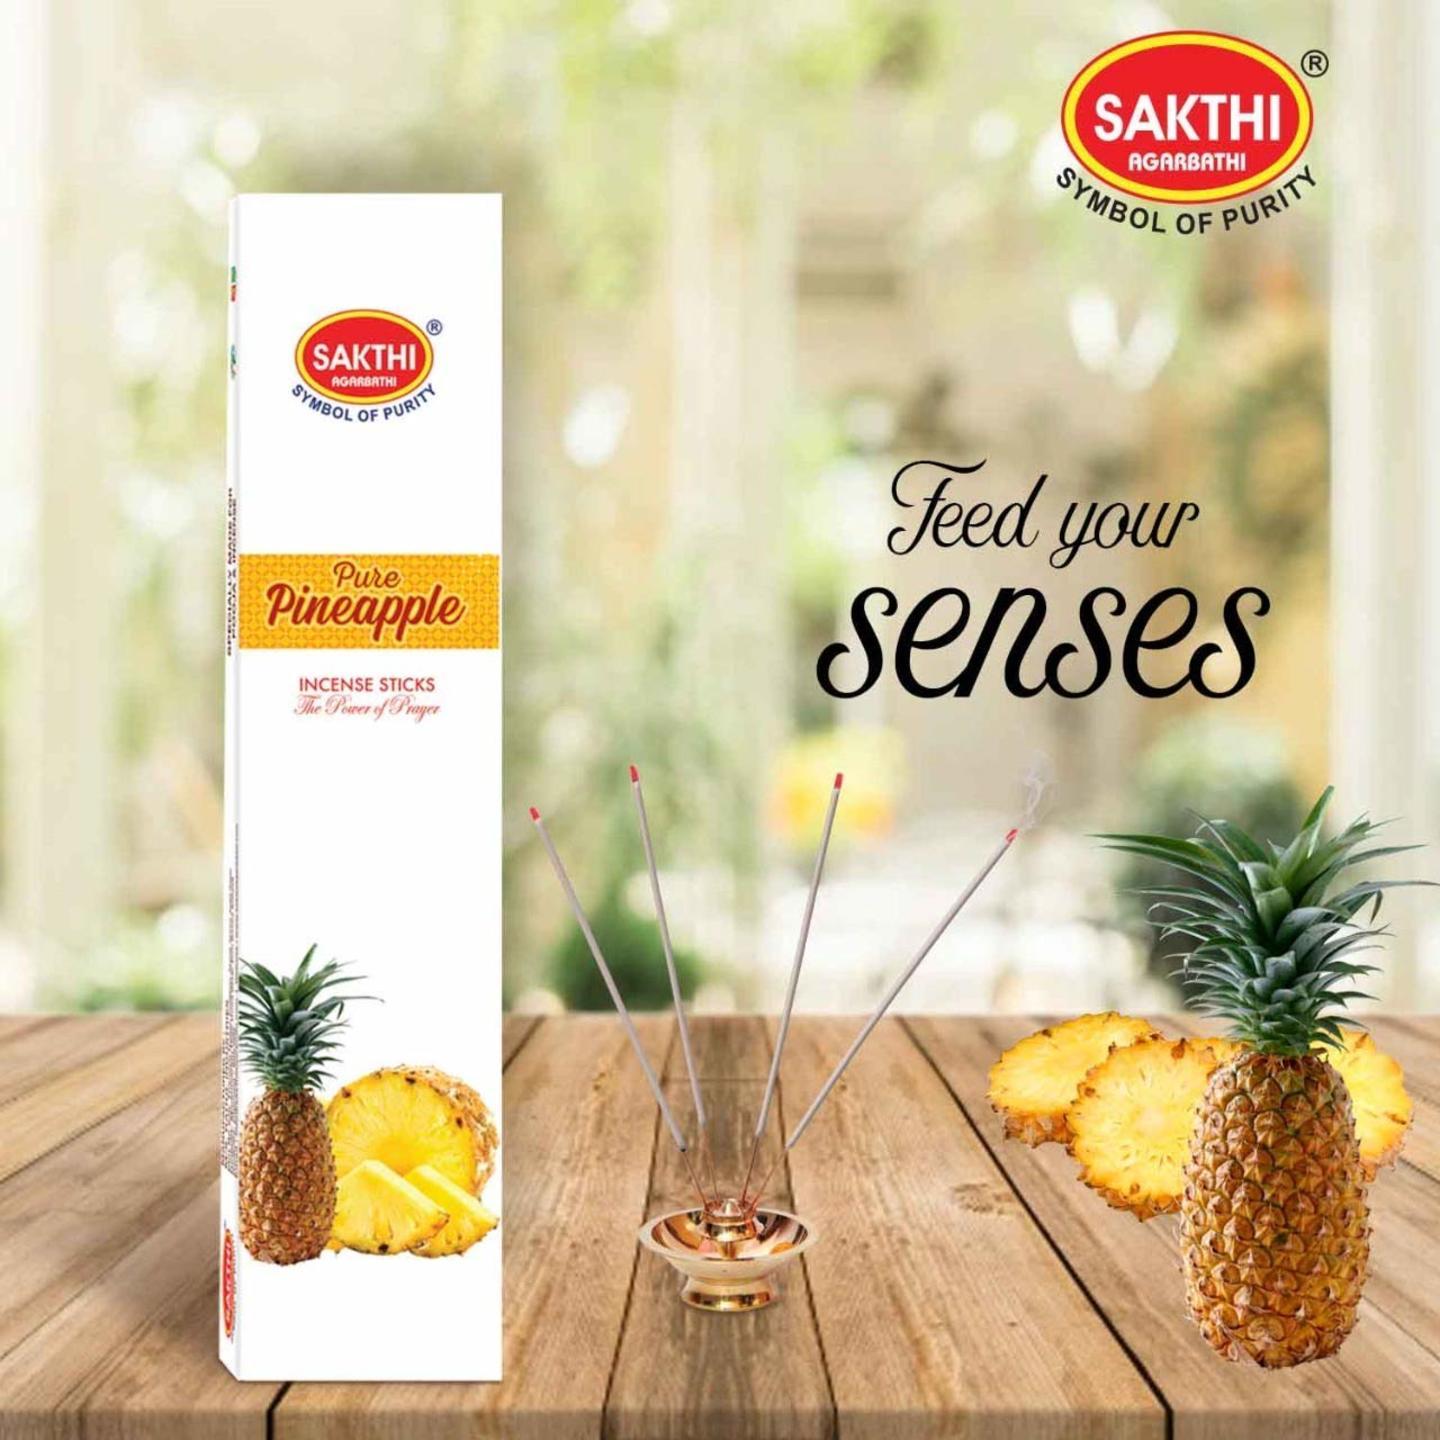 Sakthi Agarbathi Pure Pineapple Incense Sticks pack of 11